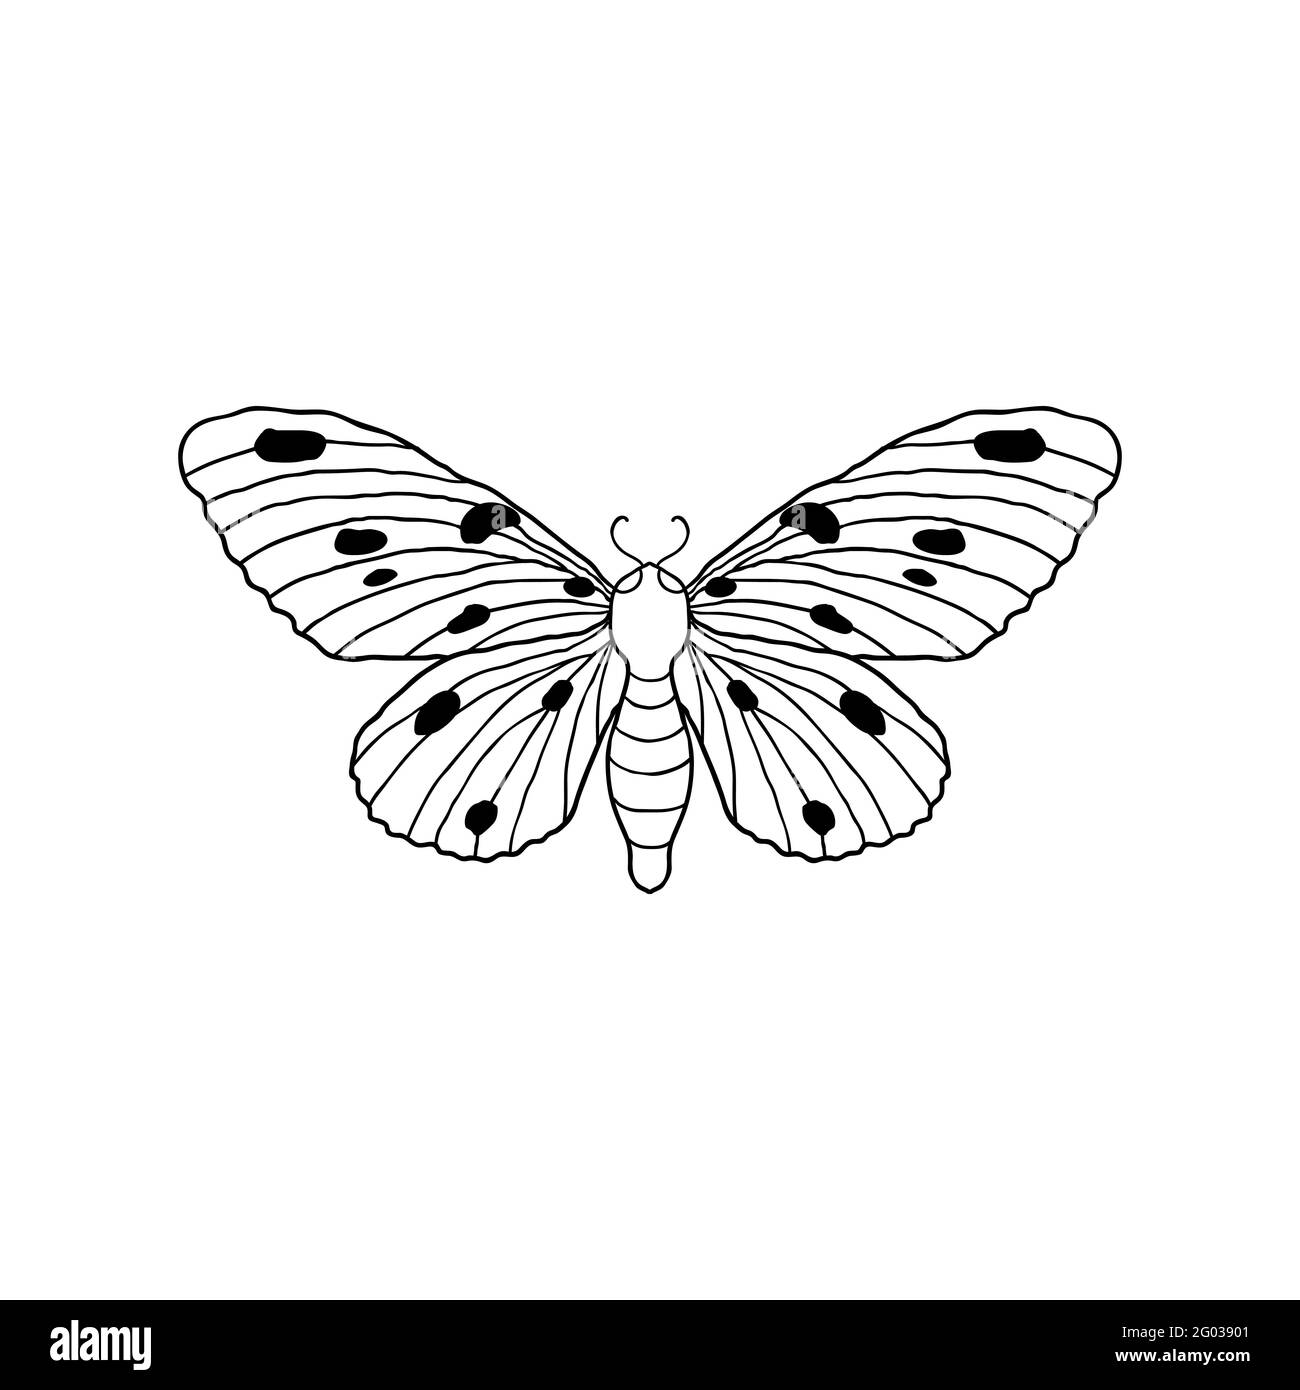 Imprimé papillon Banque d'images détourées - Page 3 - Alamy